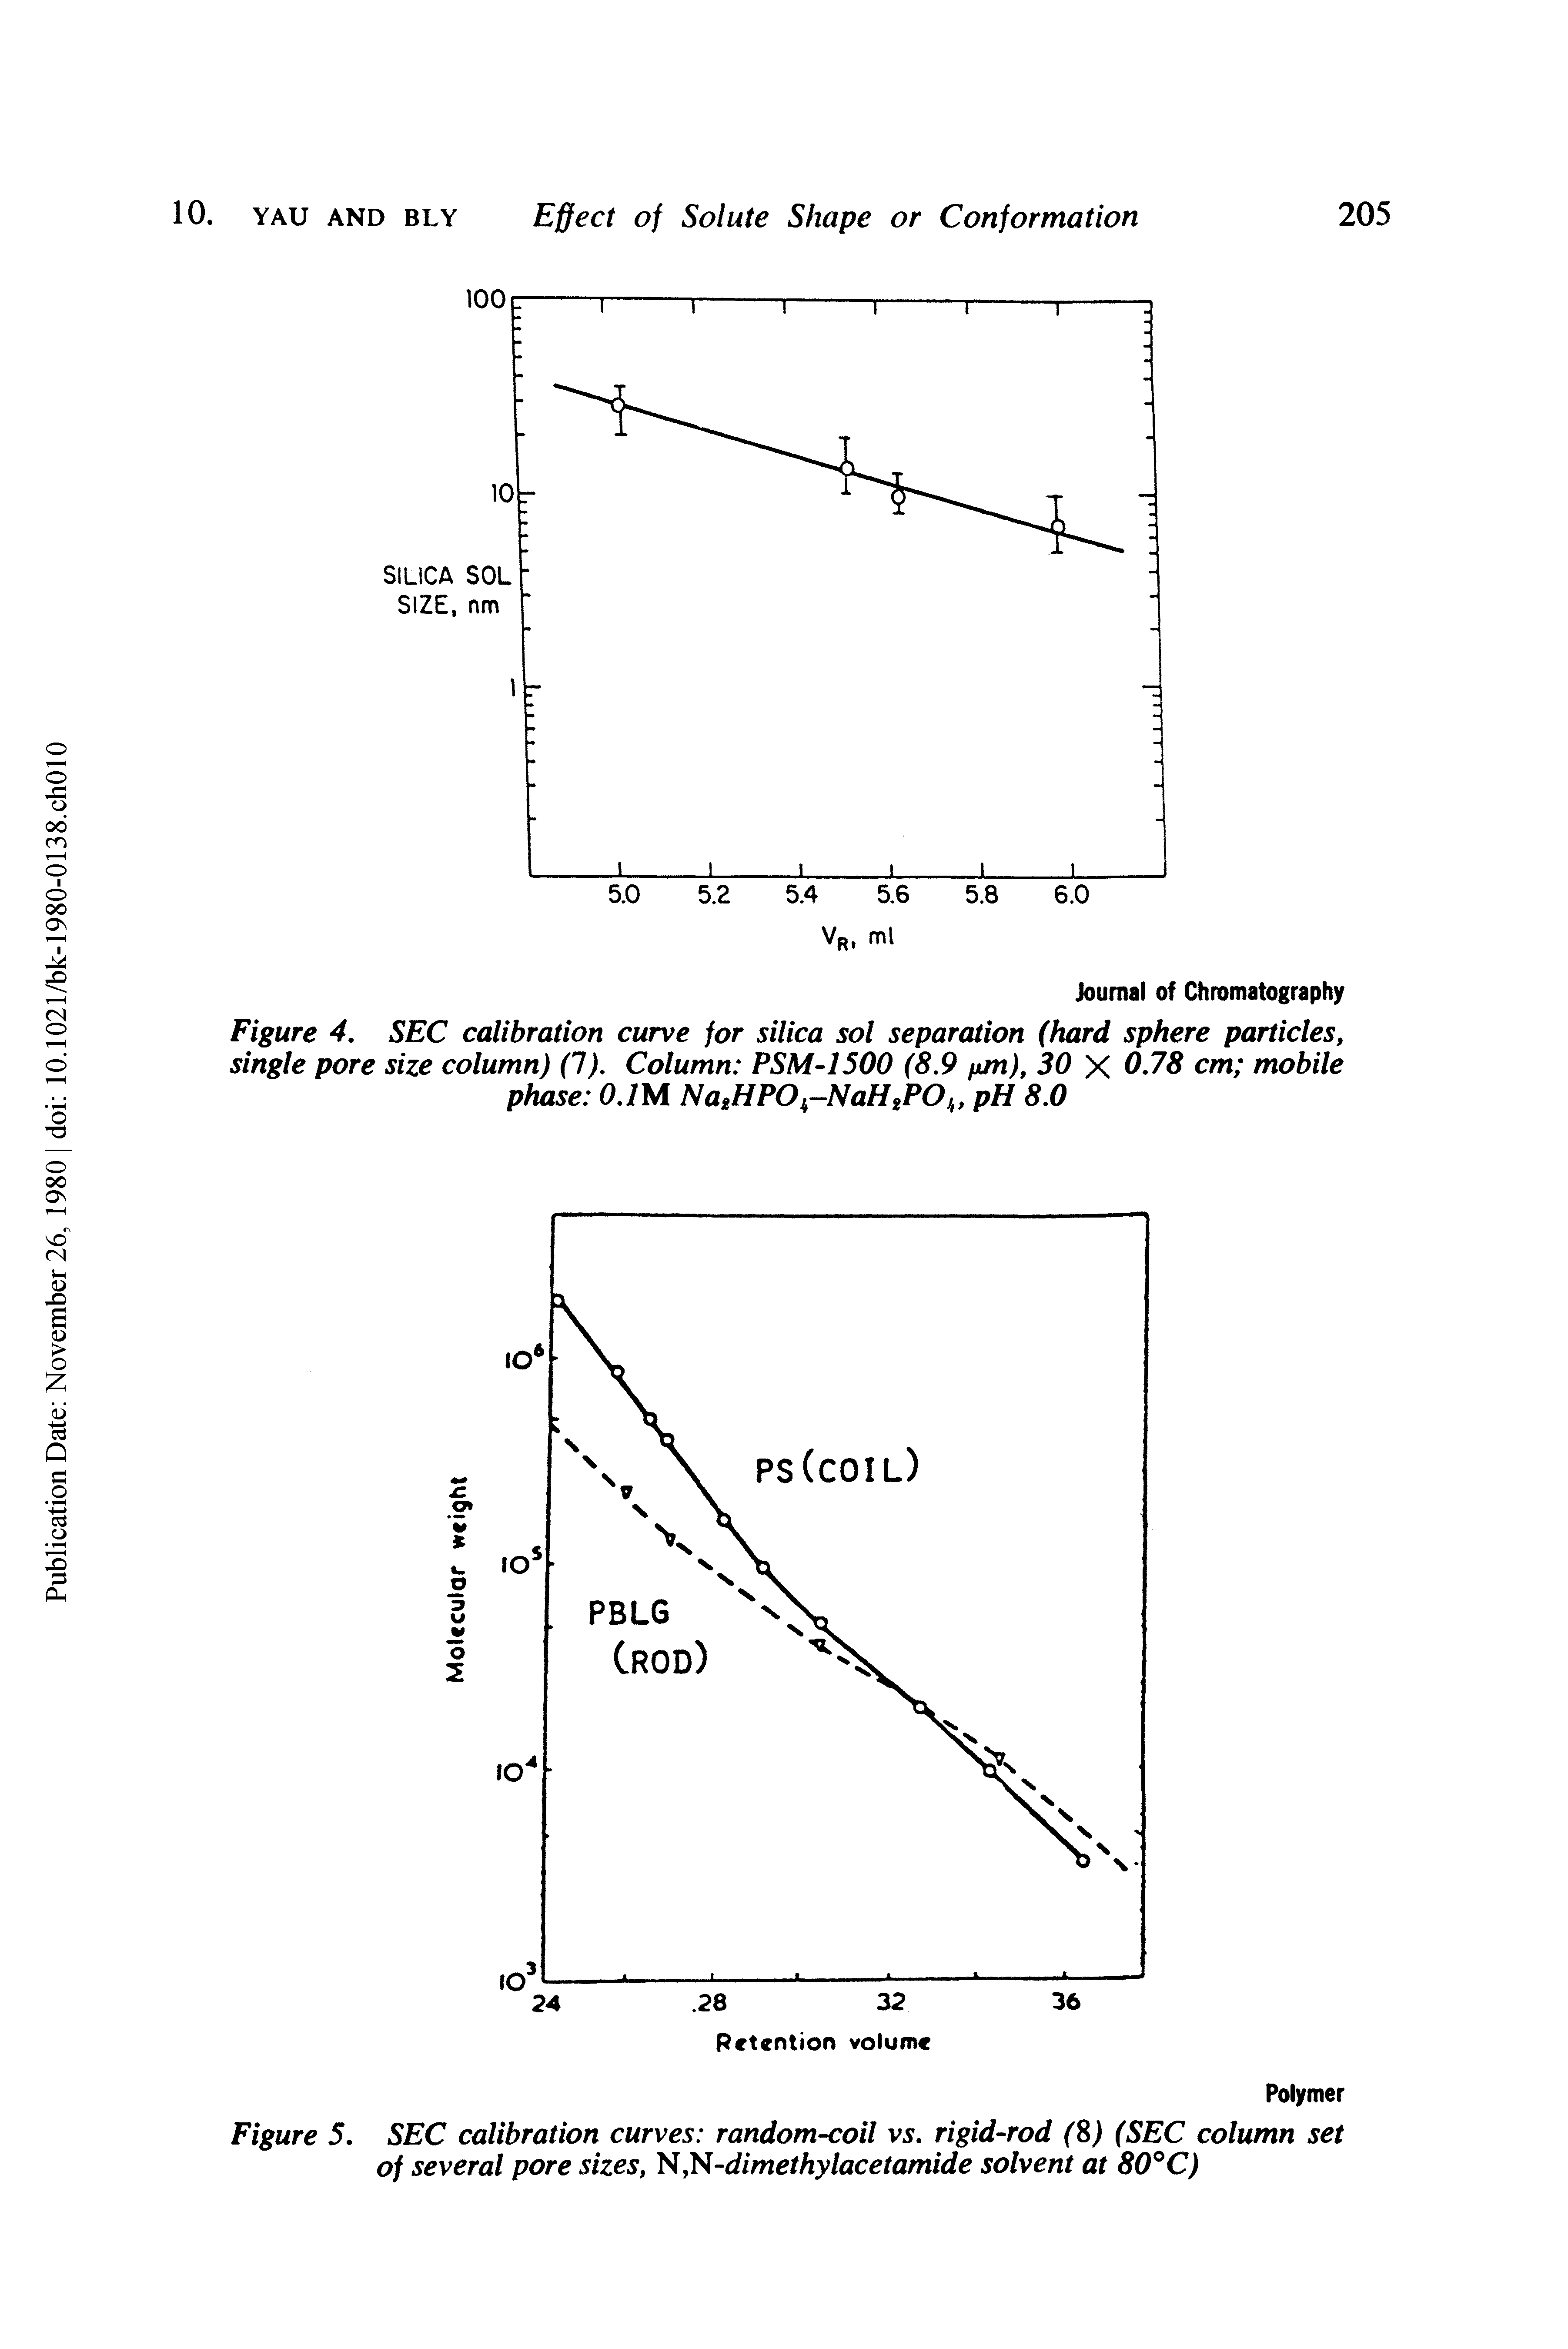 Figure 5. SEC calibration curves random-coil vs. rigid-rod (8) (SEC column set of several pore sizes, N,N-dimethylacetamide solvent at 80°C)...